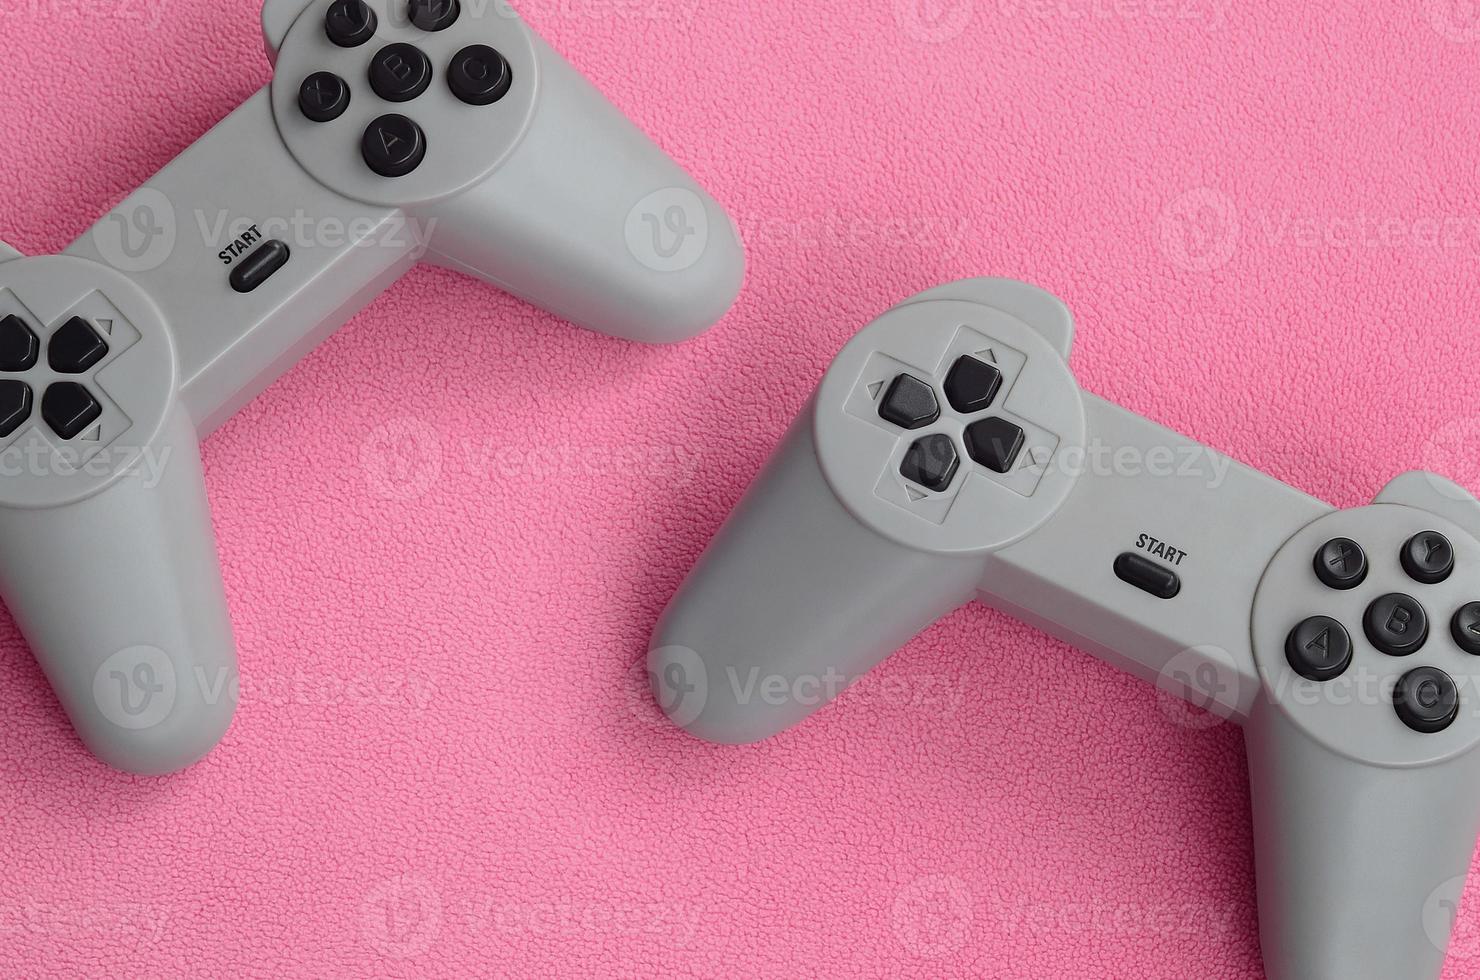 Spielkonzept spielen. Zwei Pad-Joysticks liegen auf der Decke aus pelzigem rosa Fleecestoff. Controller für Videospiele auf einer Hintergrundtextur aus hellrosa, weichem Plüsch-Fleece-Material foto